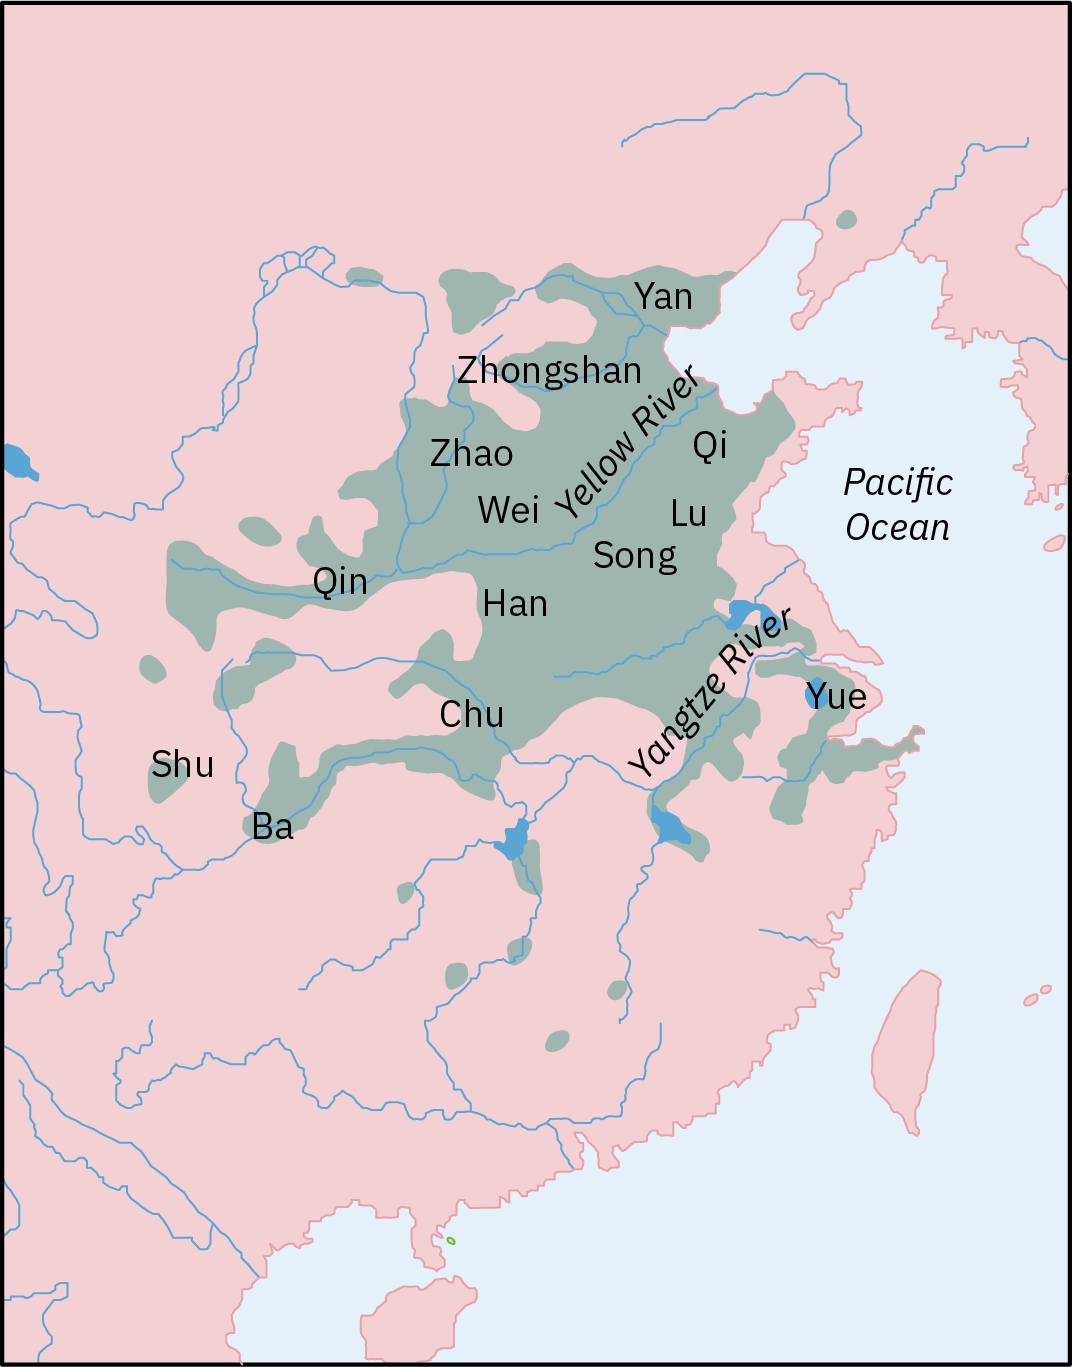 تُظهر خريطة لفترة الممالك المتحاربة في الصين القديمة (حوالي 475-221 قبل الميلاد) أجزاء من الصين تعاني من الاضطرابات الاجتماعية والخلافات.